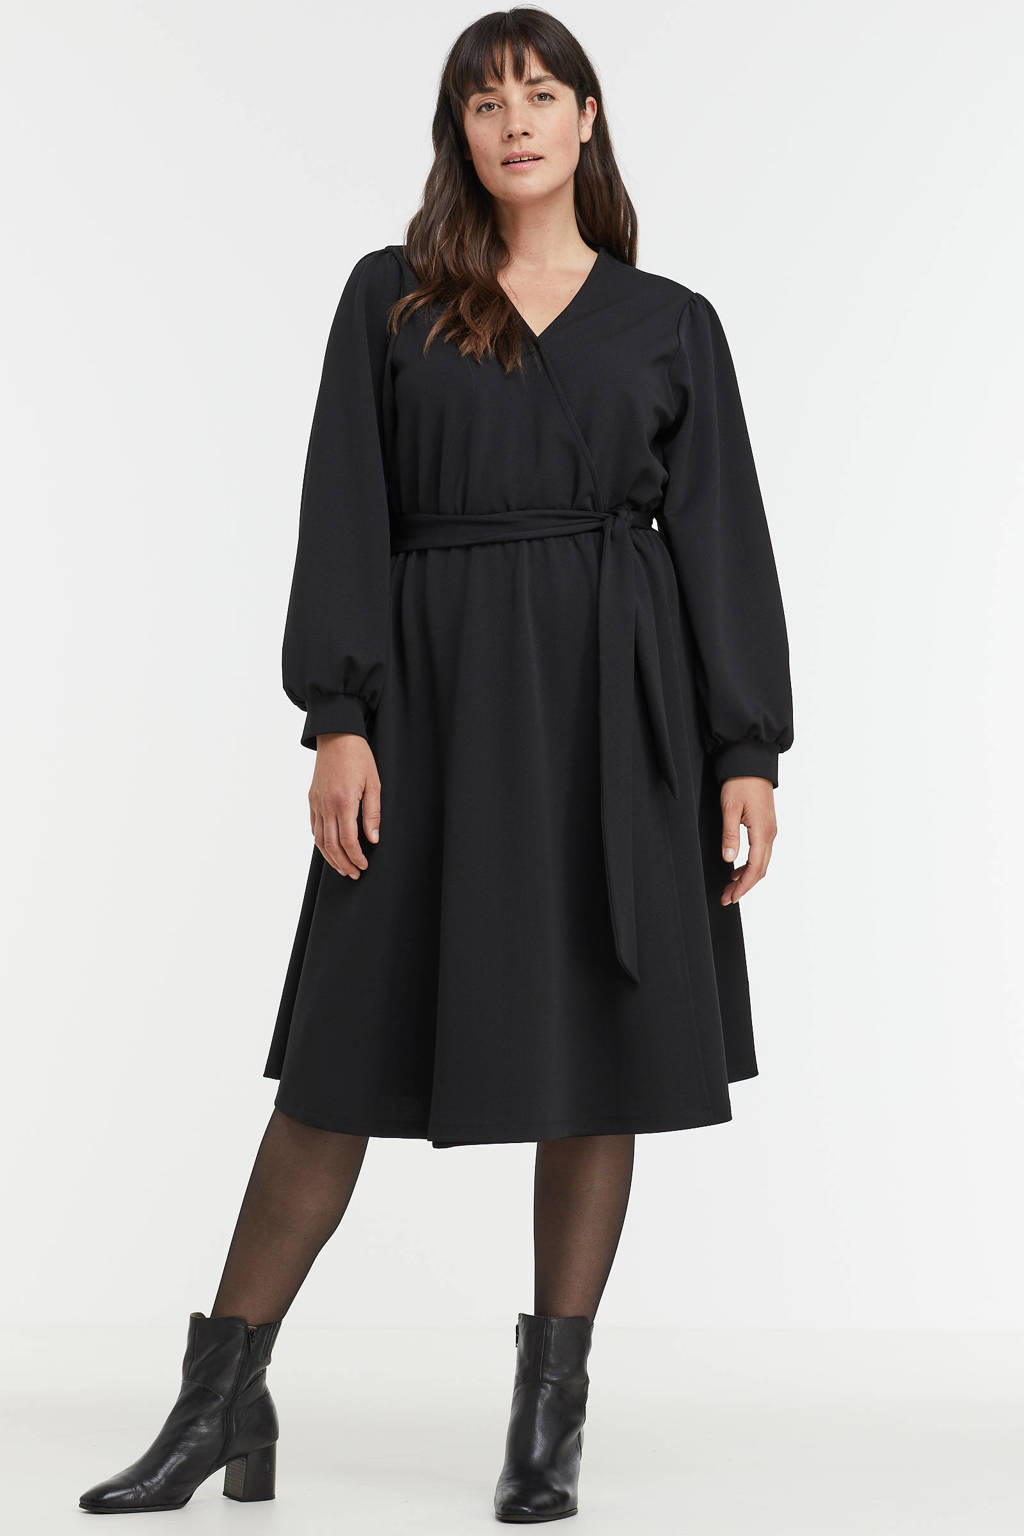 Zwarte dames GREAT LOOKS overslagjurk van polyester met lange mouwen, V-hals, elastische tailleband met koord en ceintuur